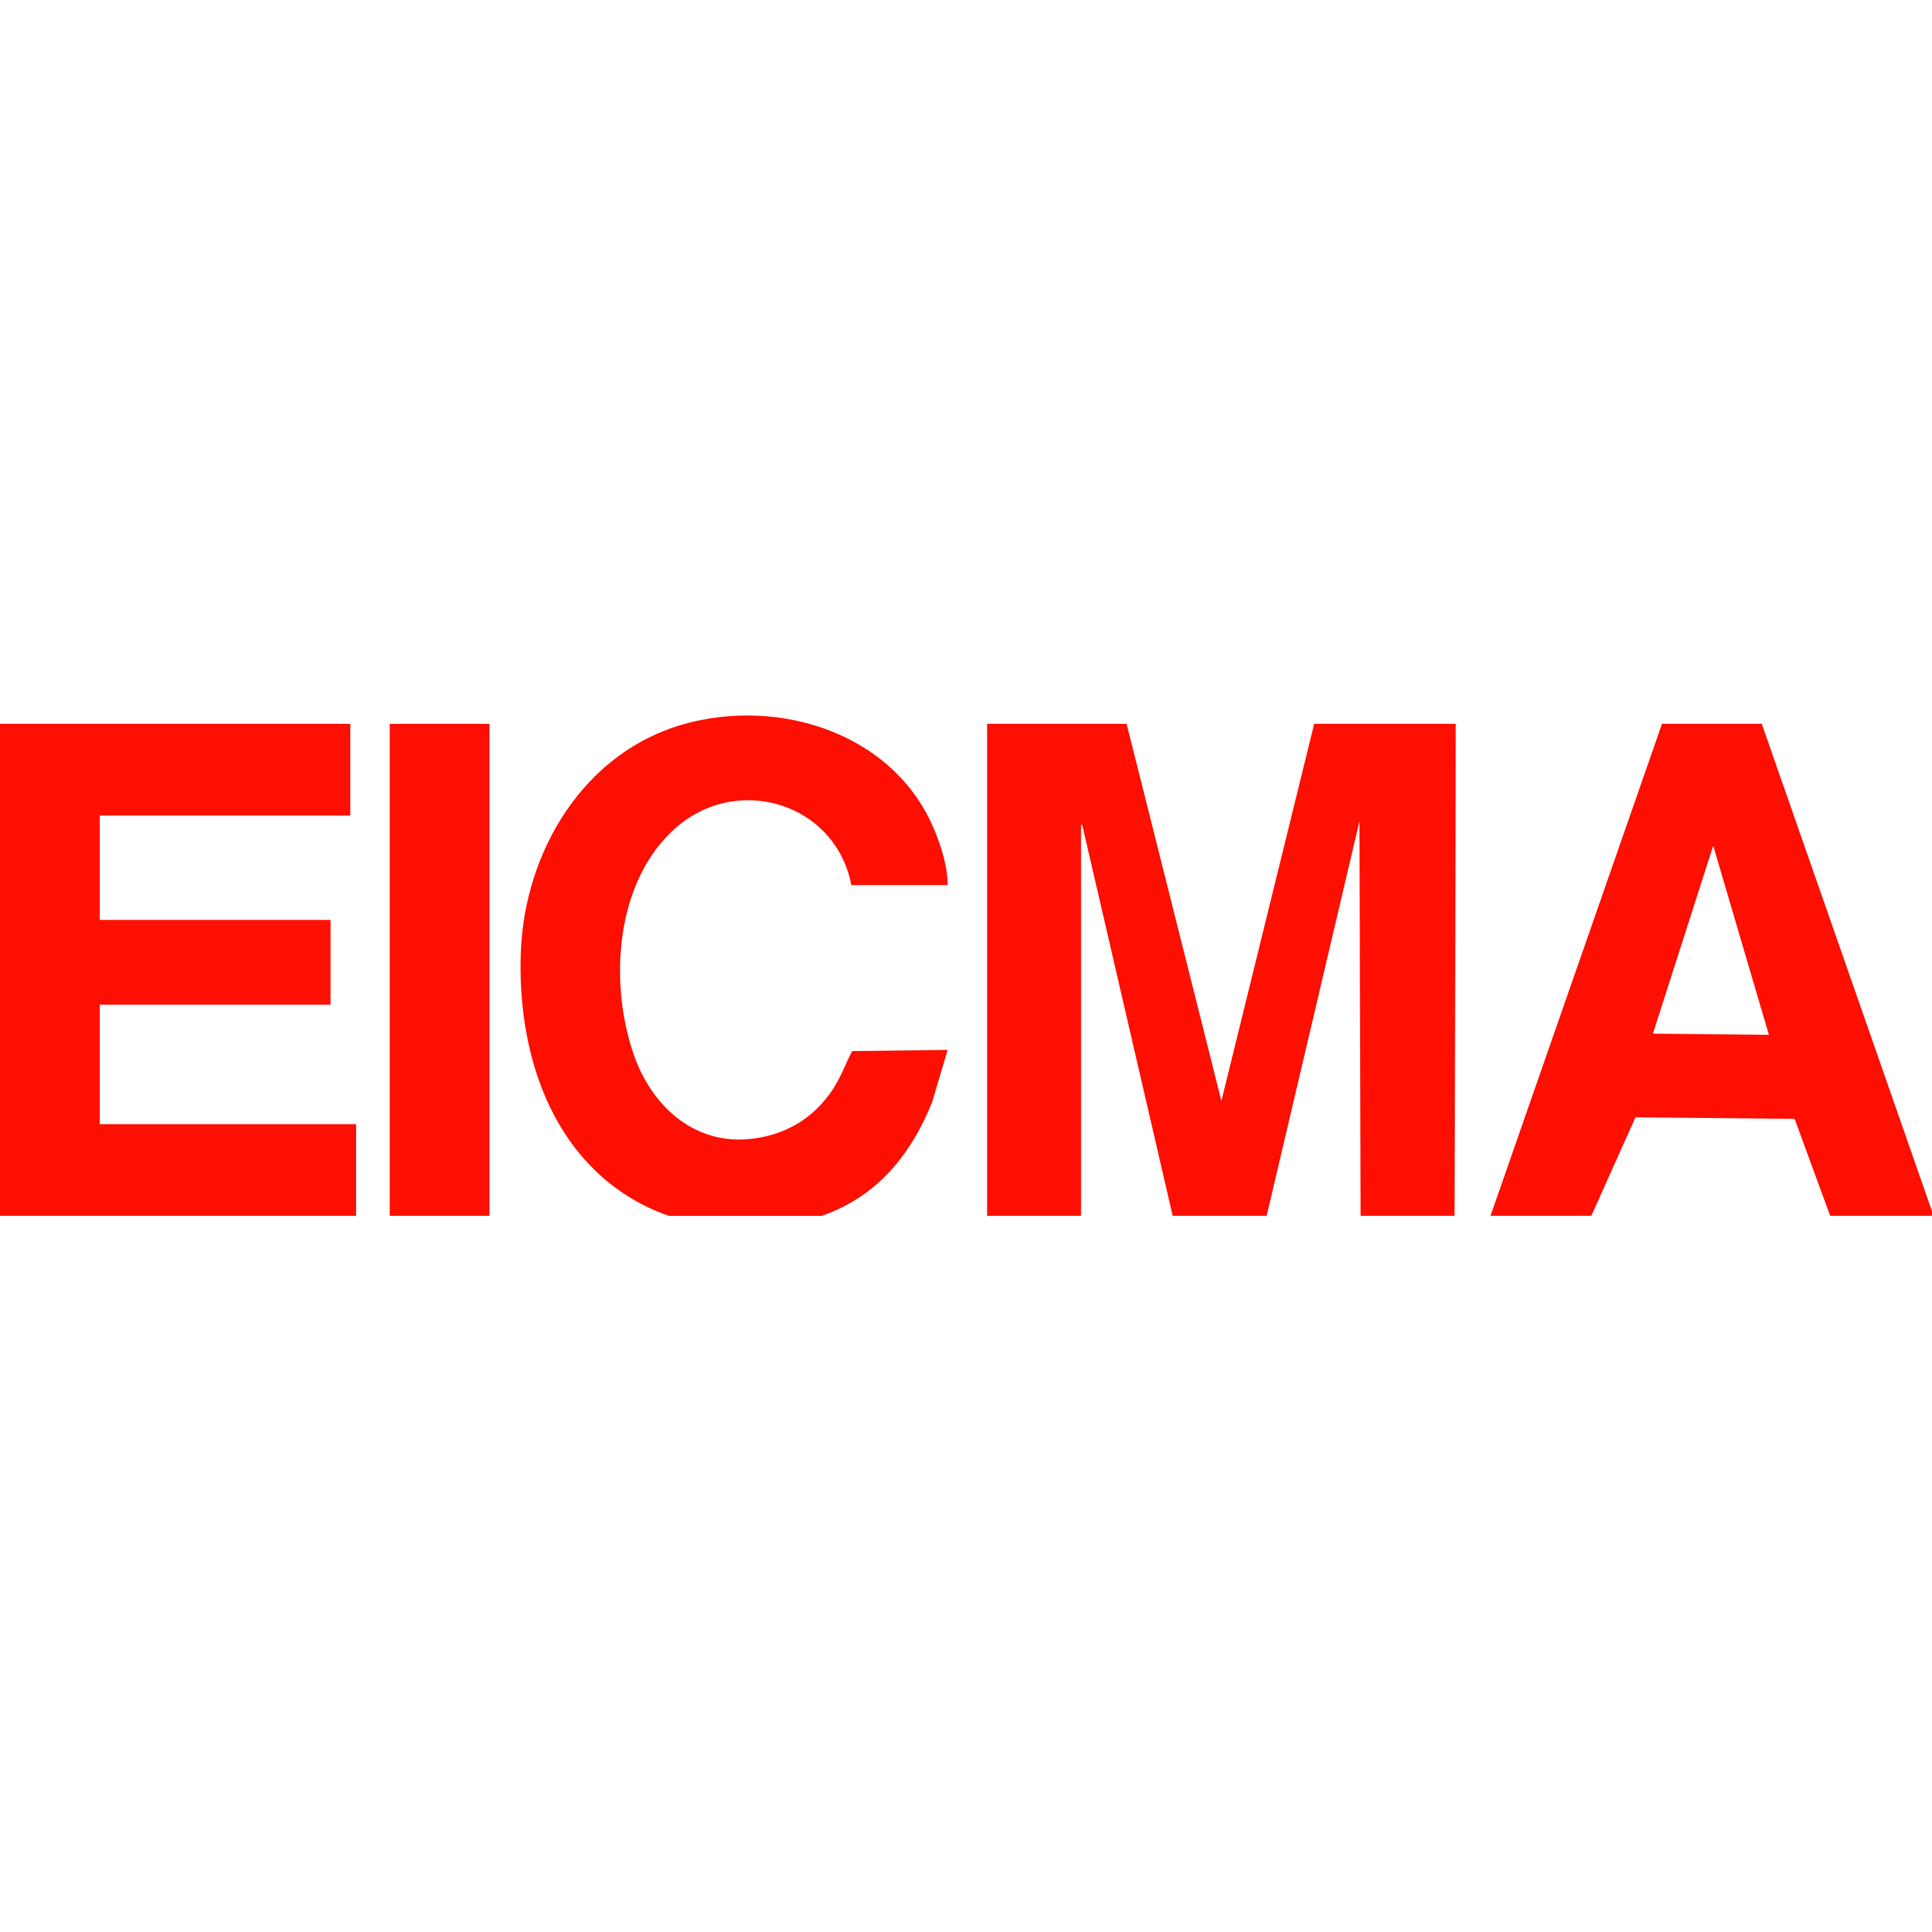 EICMA Logo  Transparent Image